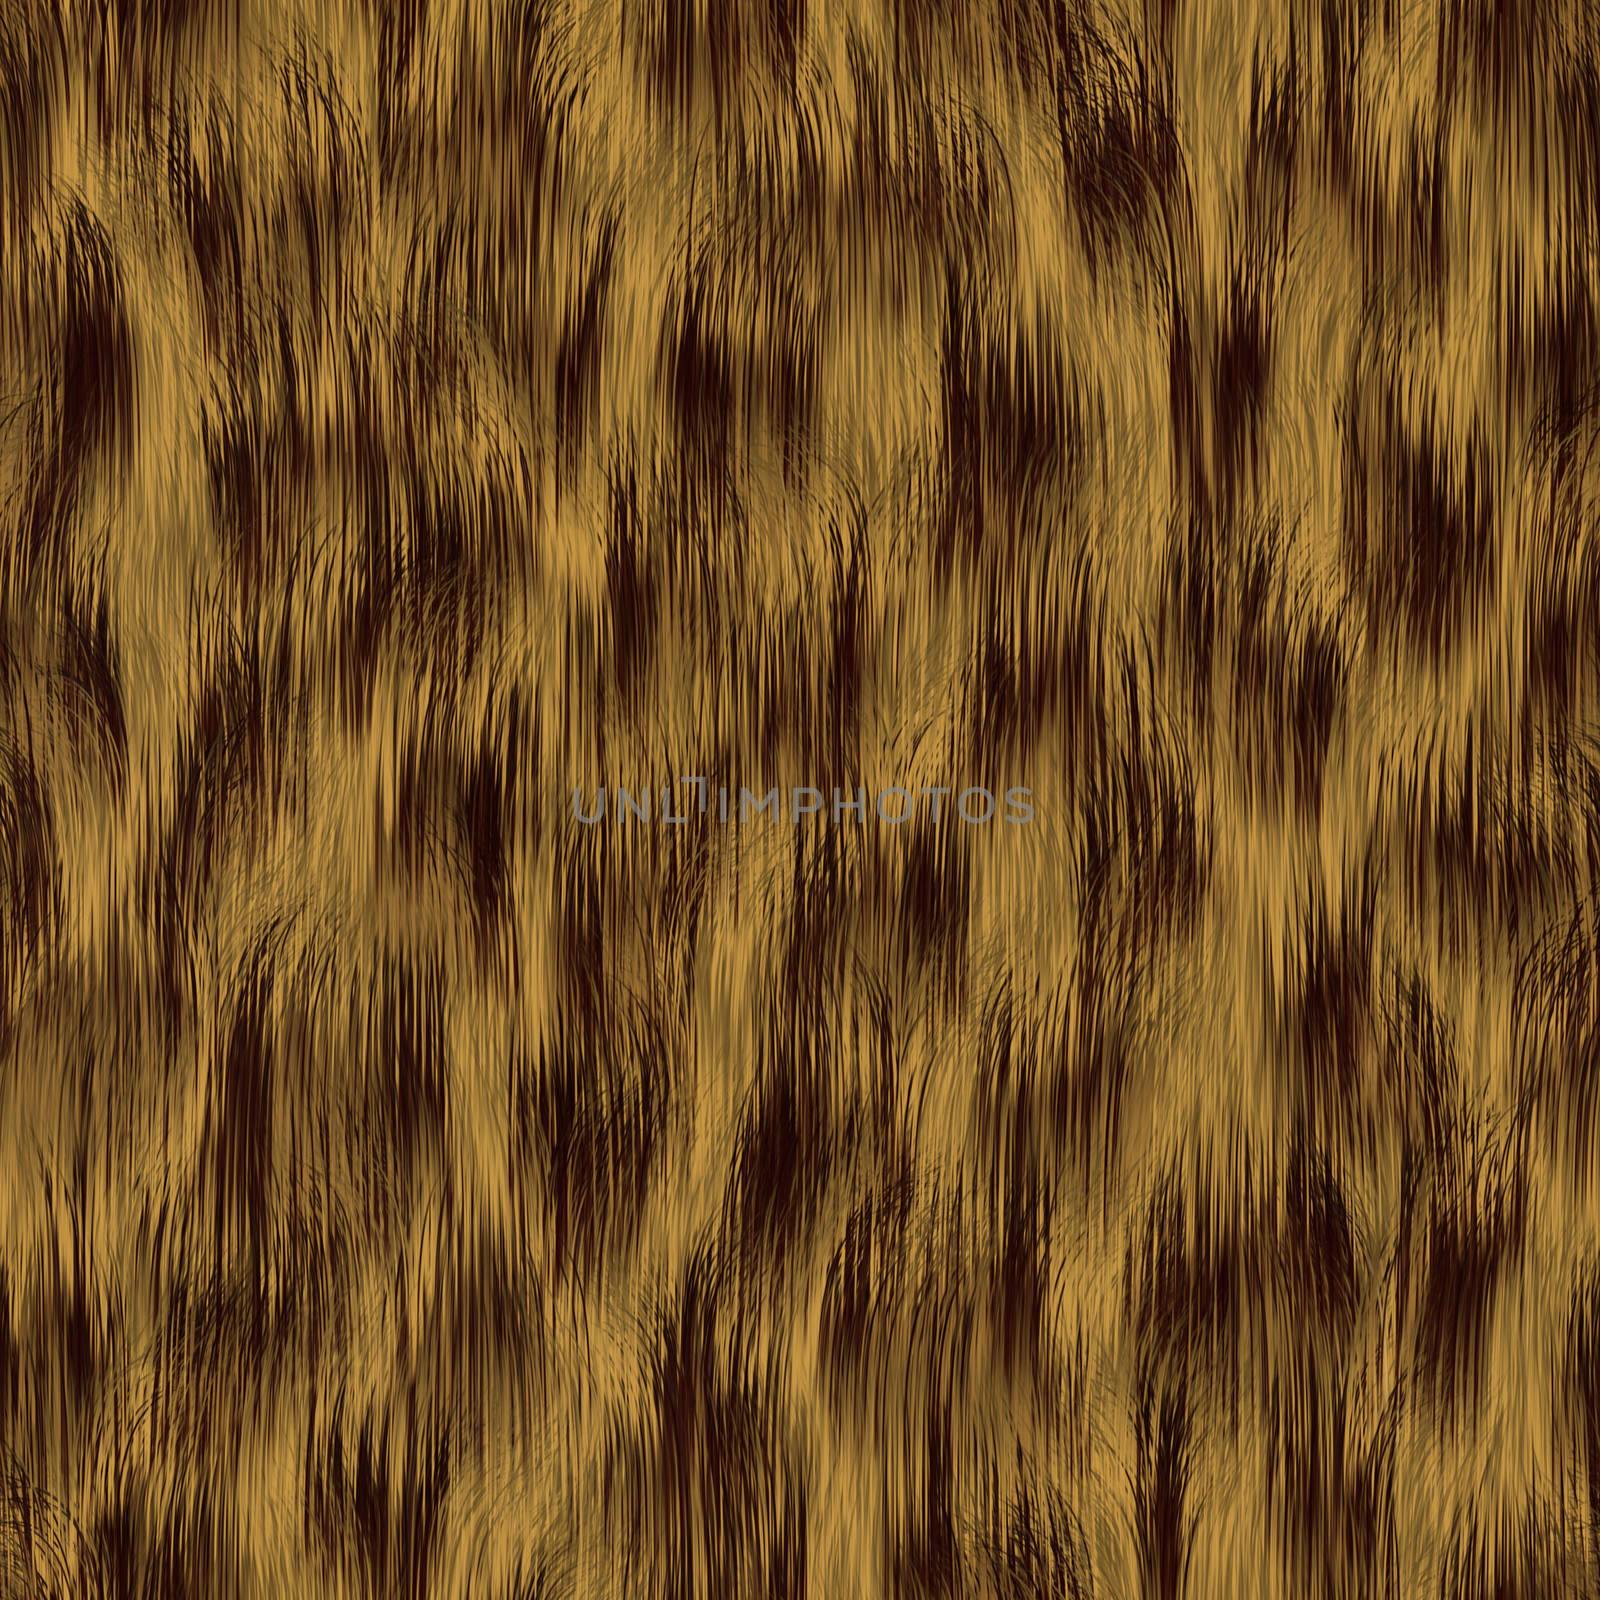 seamless yellow grass pattern